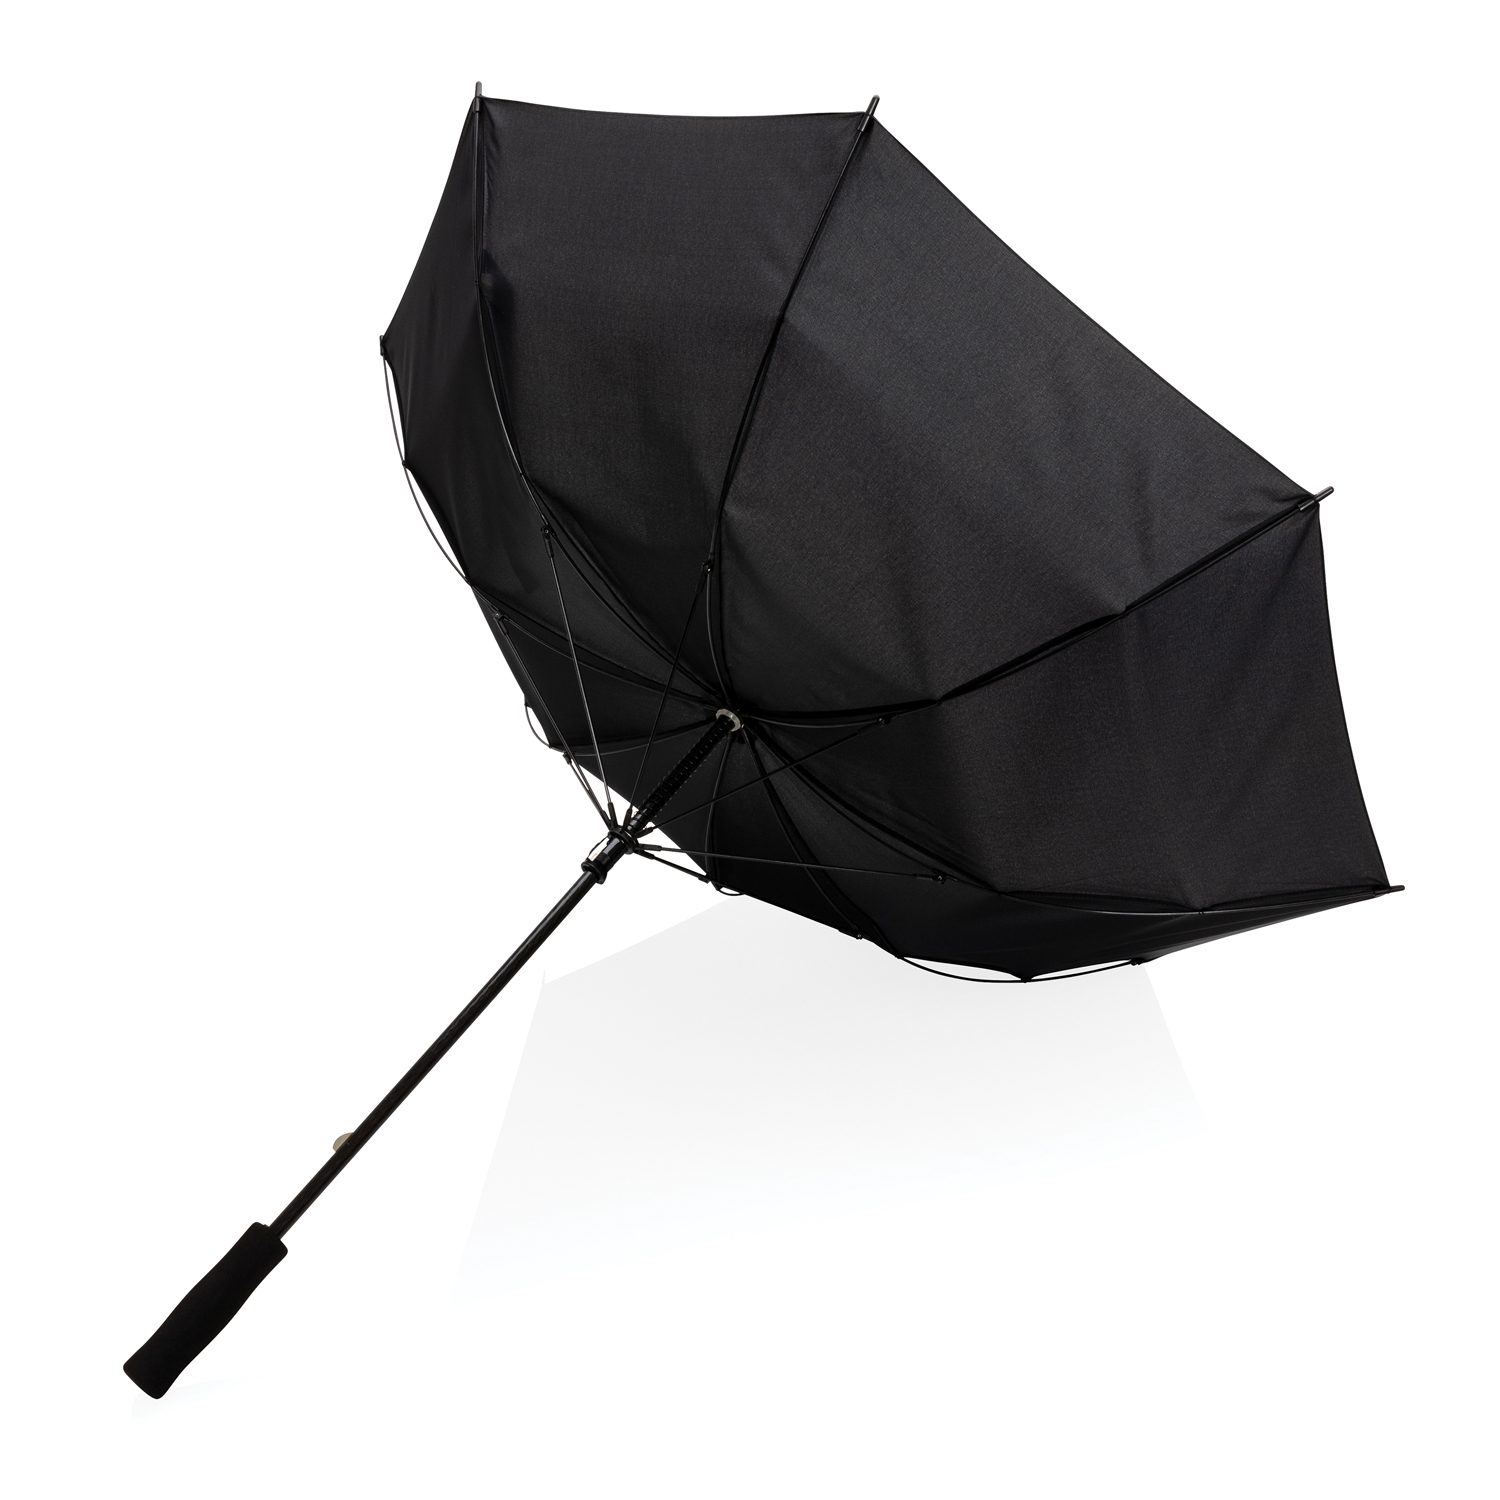 Зонт-антишторм Impact из RPET AWARE™, d103 см